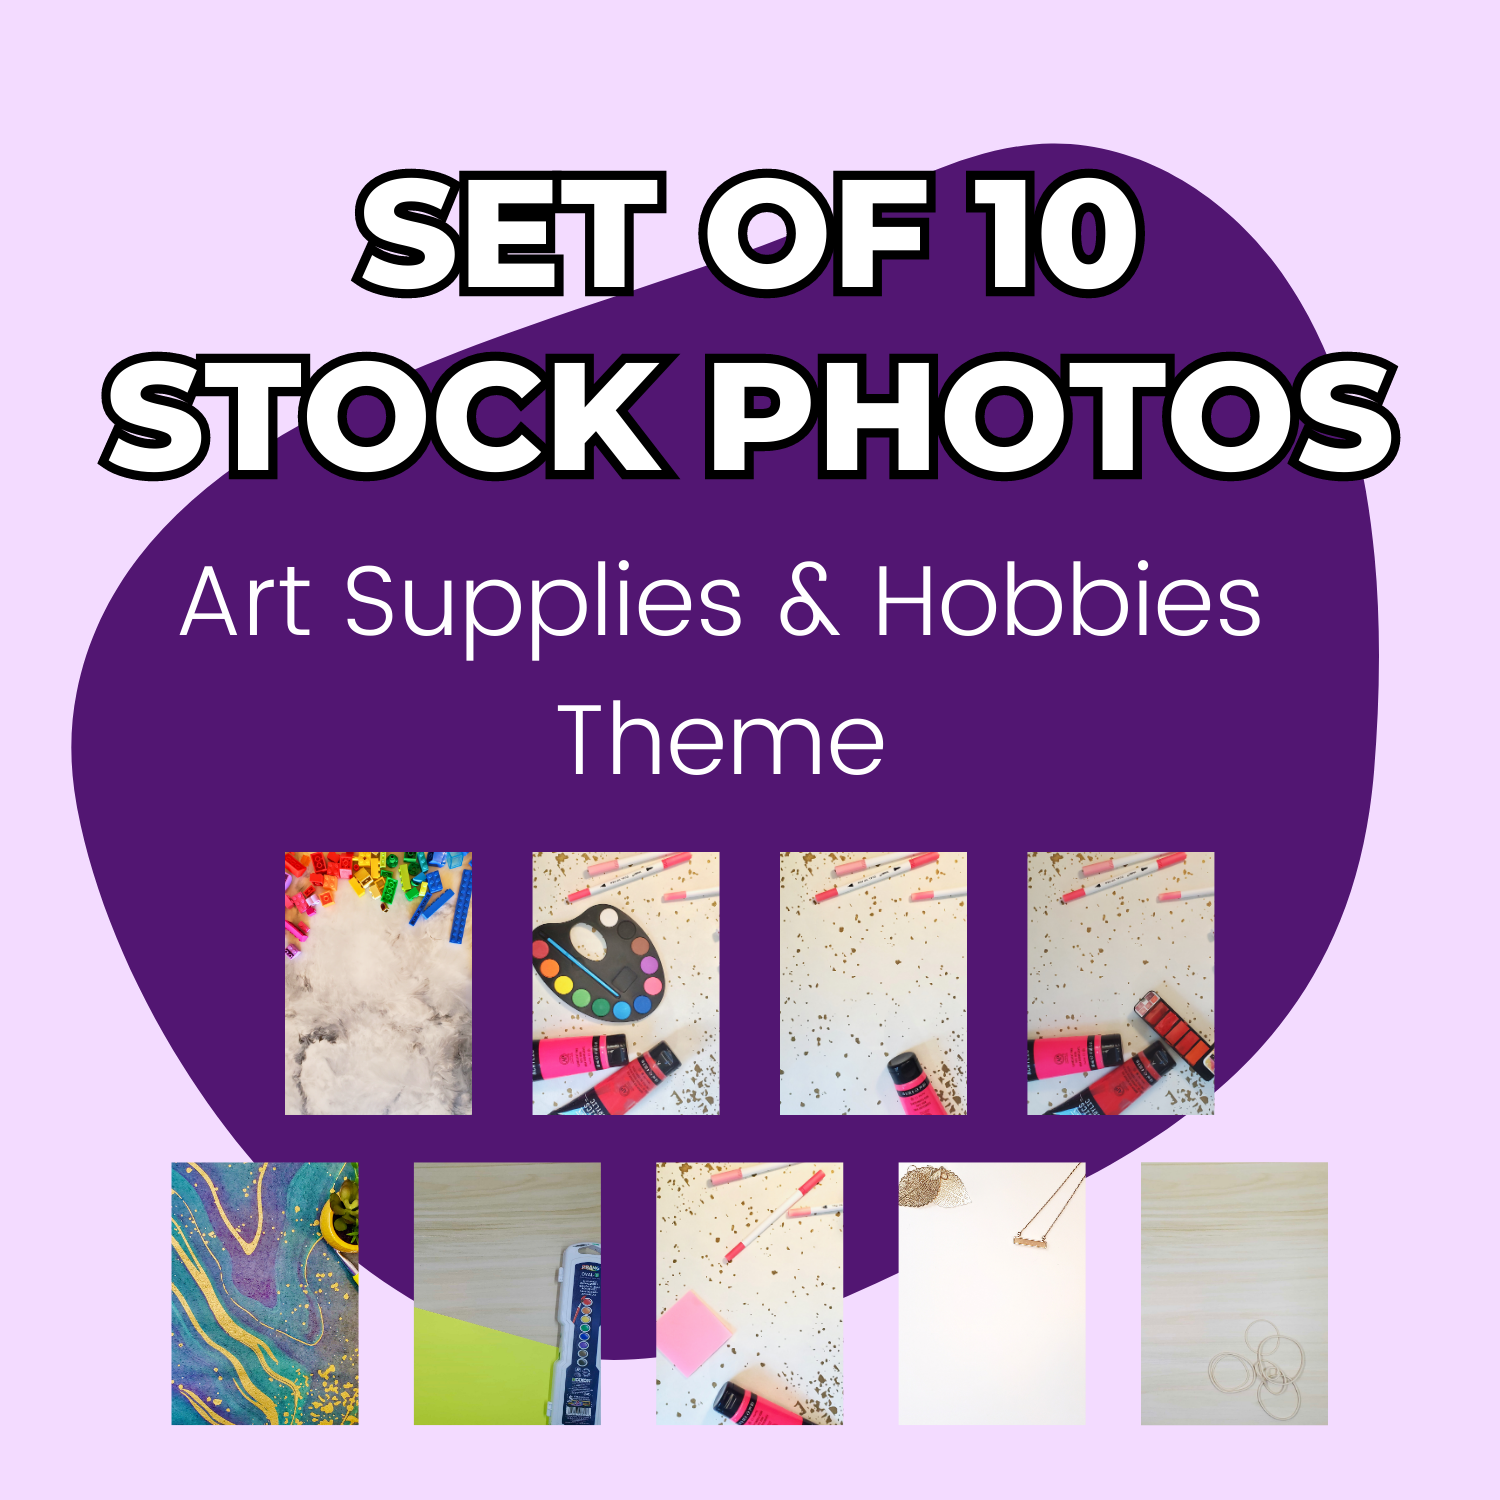 Art Supplies and Hobbies Stock Photos (set of 10)